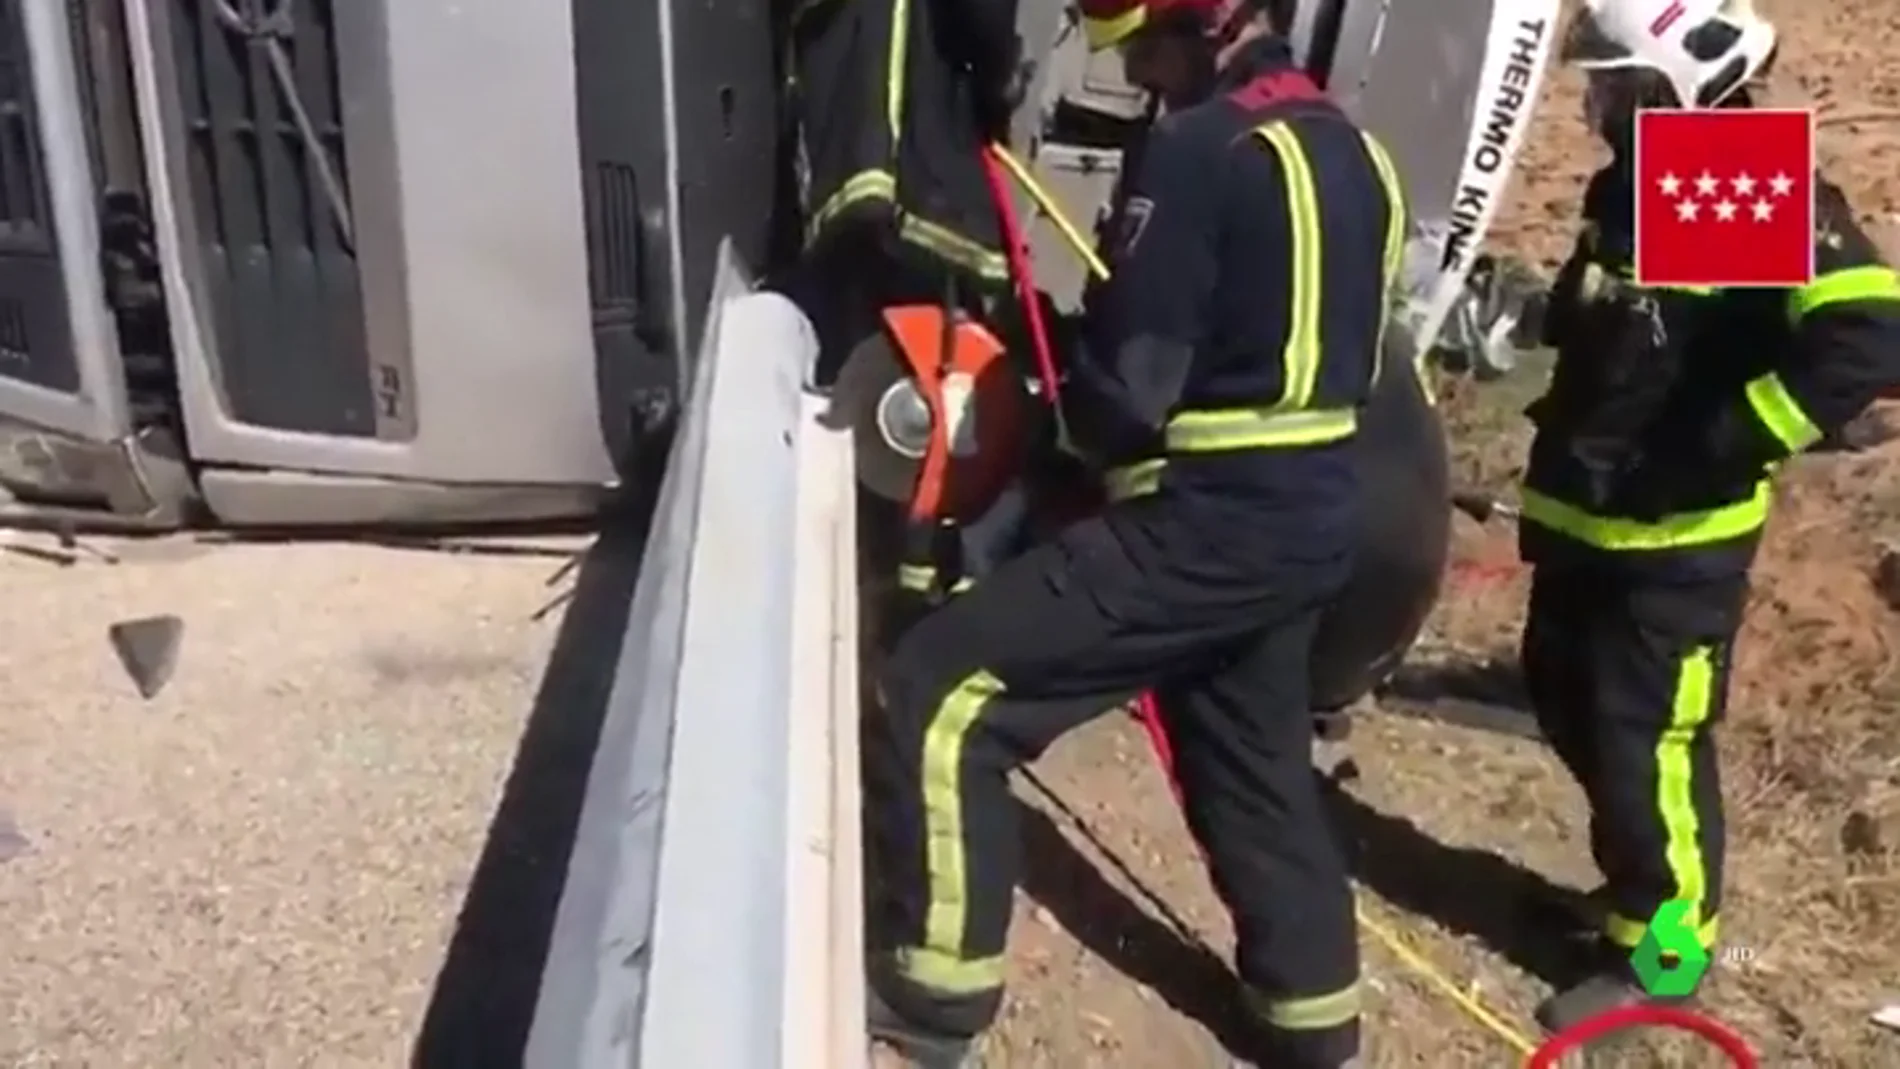 Complicado rescate de un camionero atrapado tras un accidente en Madrid